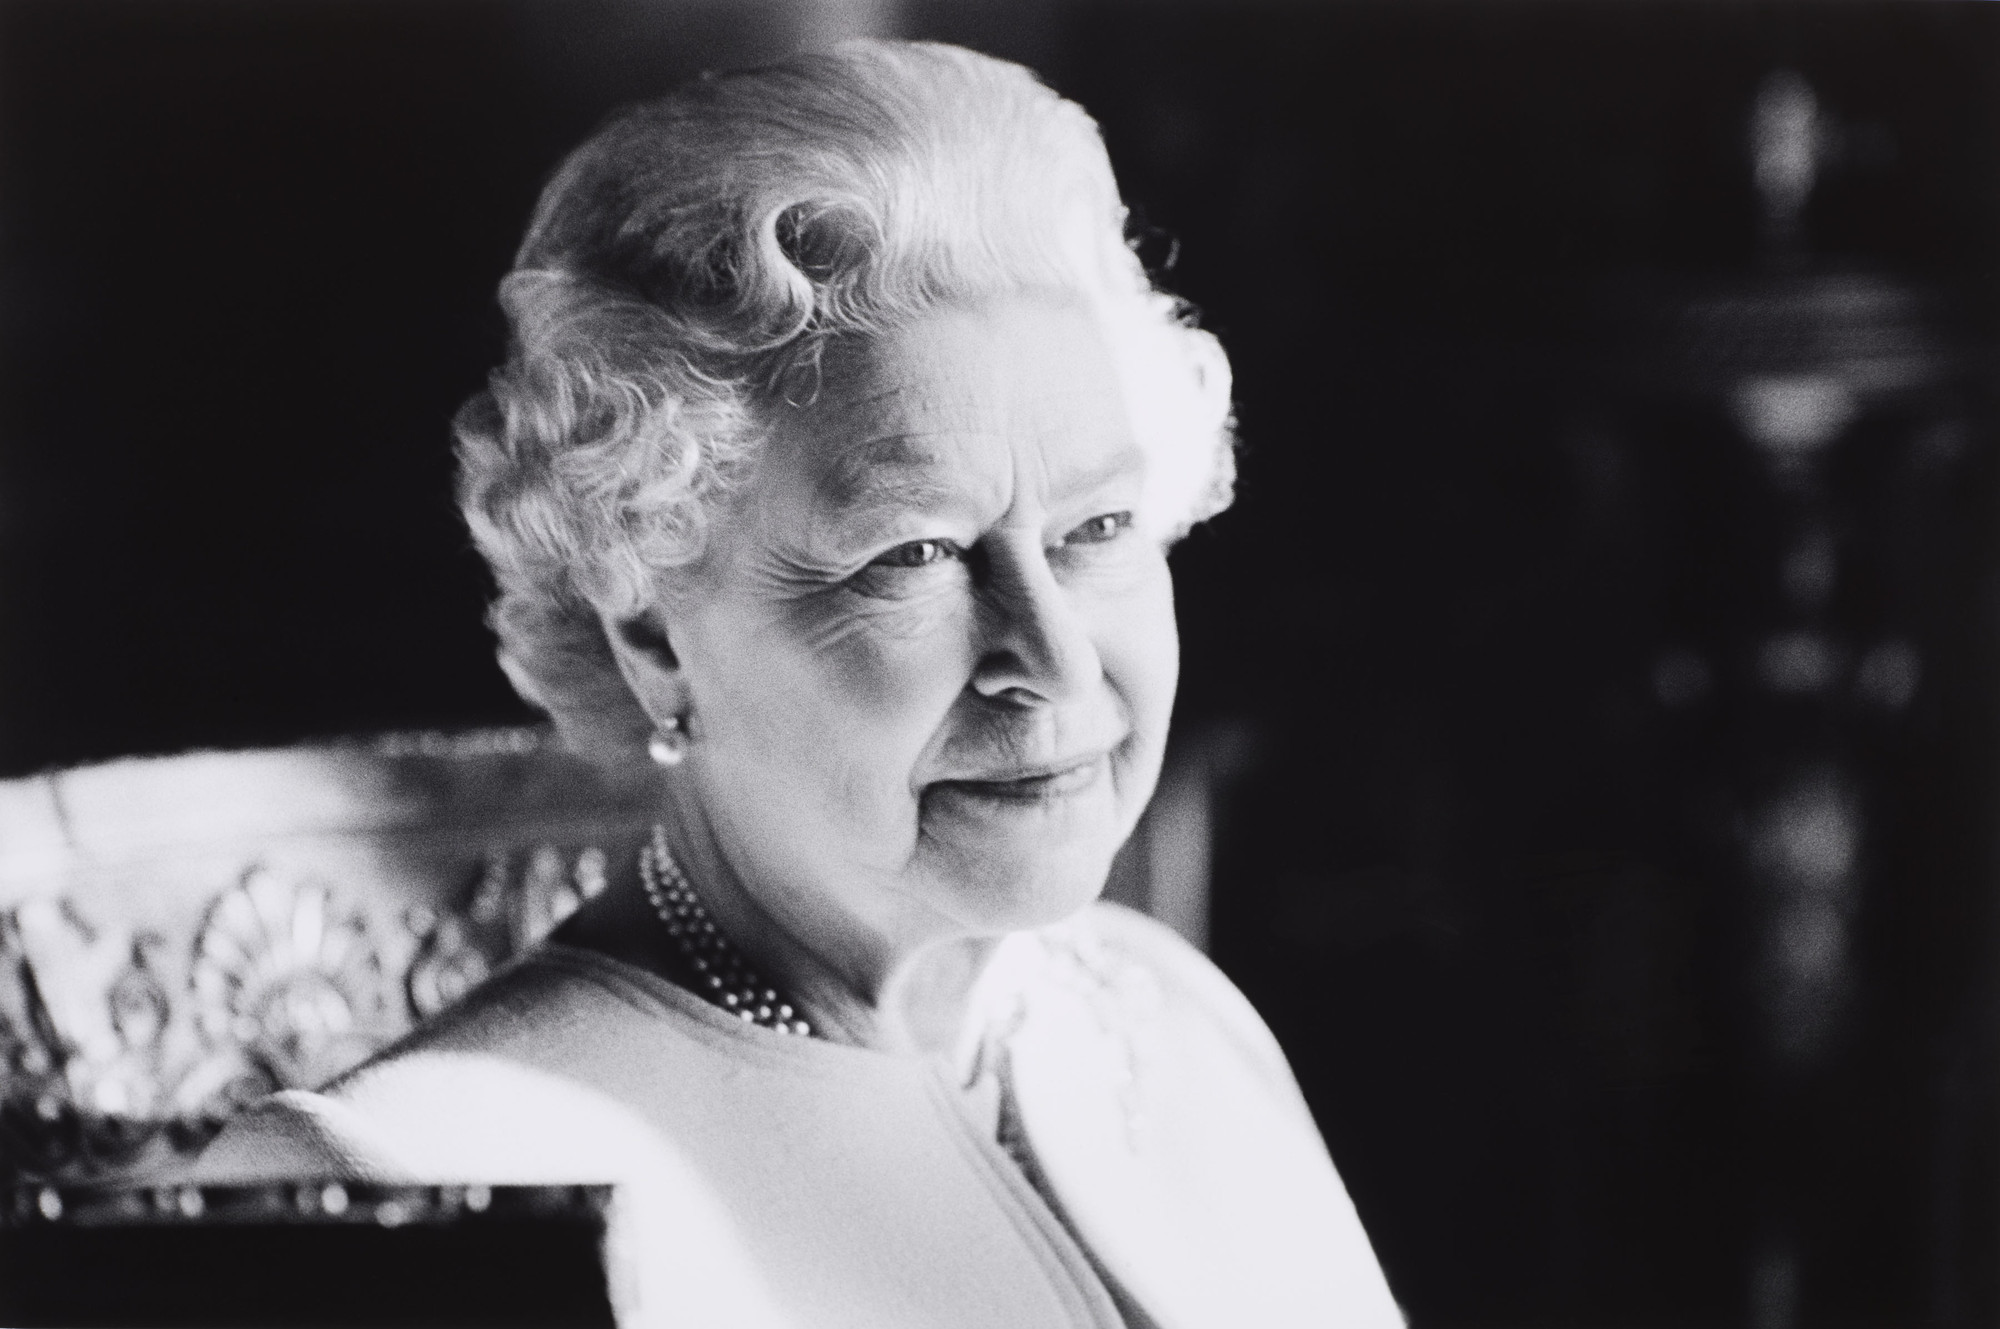 An image of Queen Elizabeth II